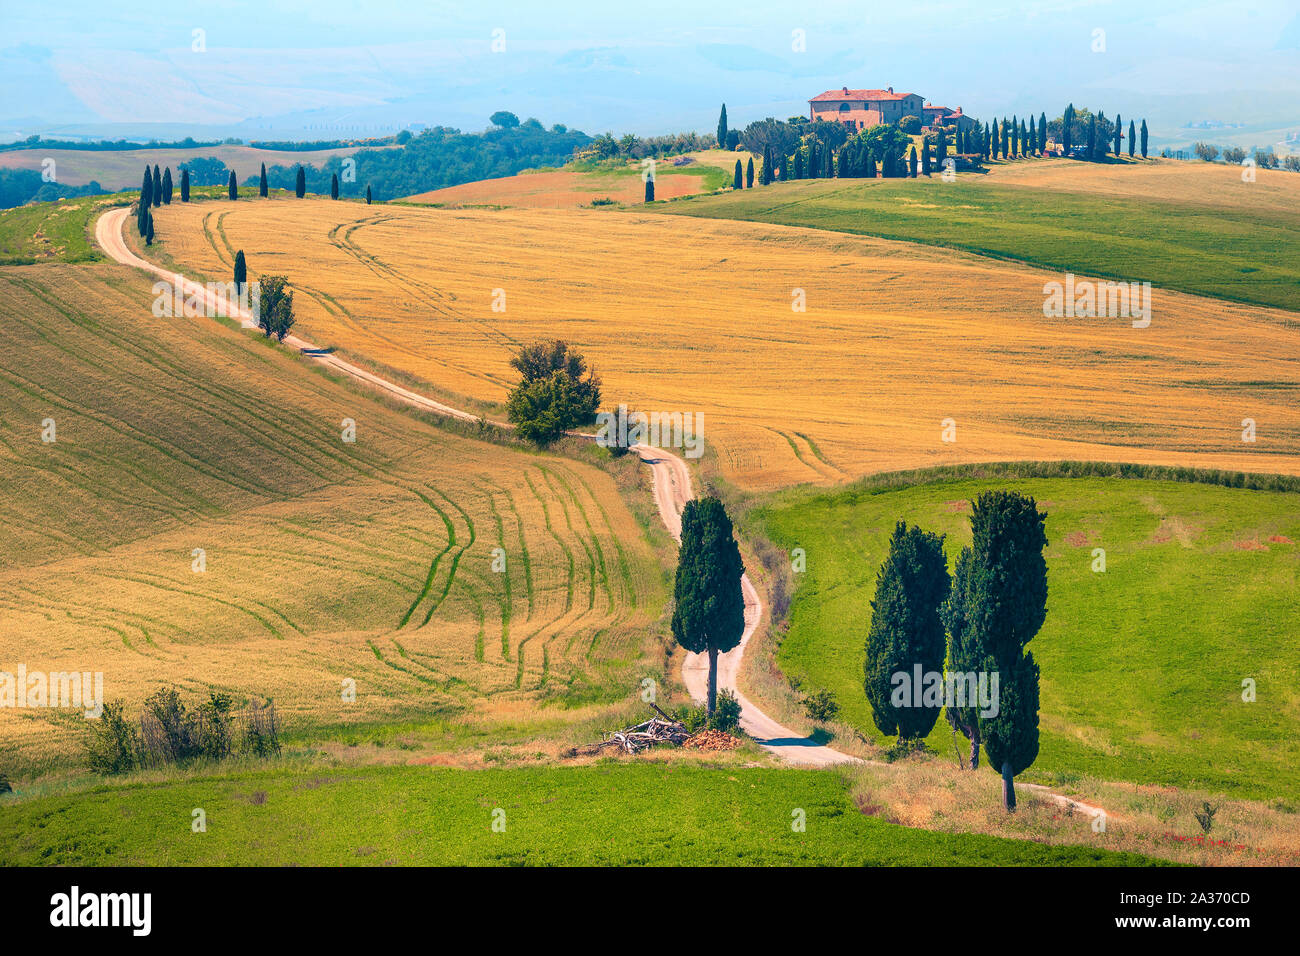 Fotografía impresionante ubicación y paisaje rural en la Toscana. Agroturismo y espectaculares curvas típica carretera con cipreses, cerca de Pienza touristi Foto de stock